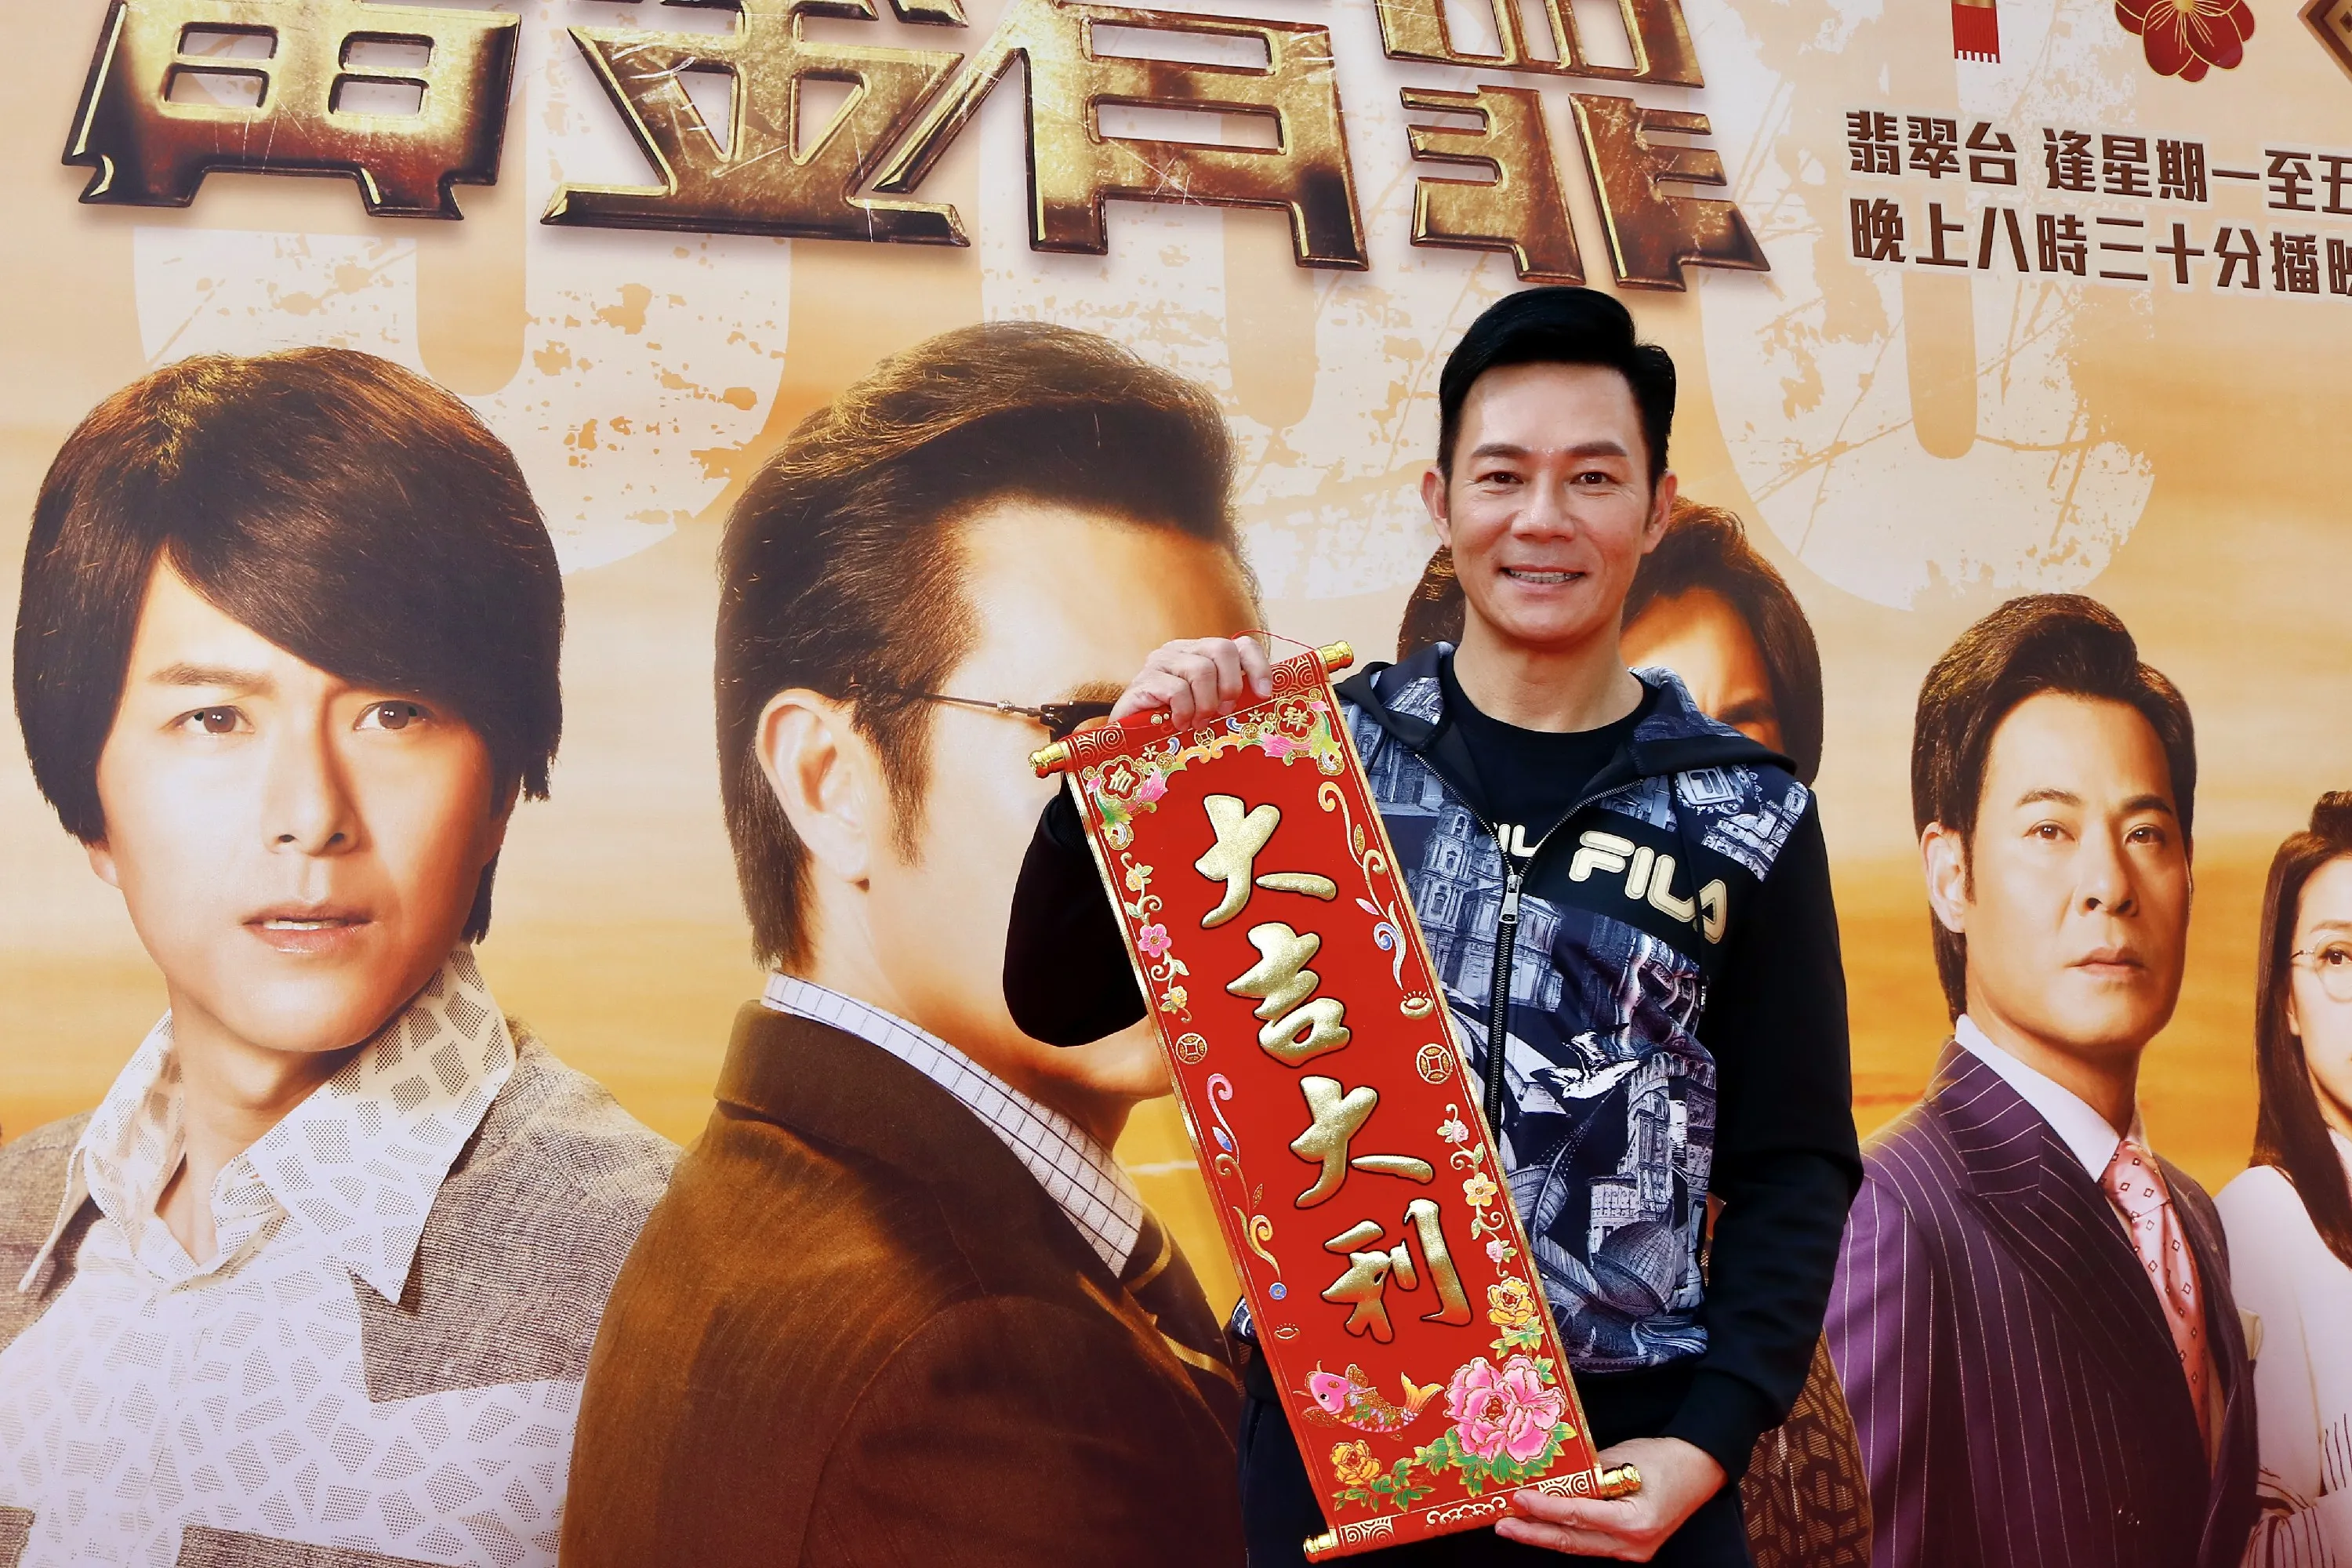  Cheung Siu-fai 领衔《黄金有罪》收视节节上升1.jpg